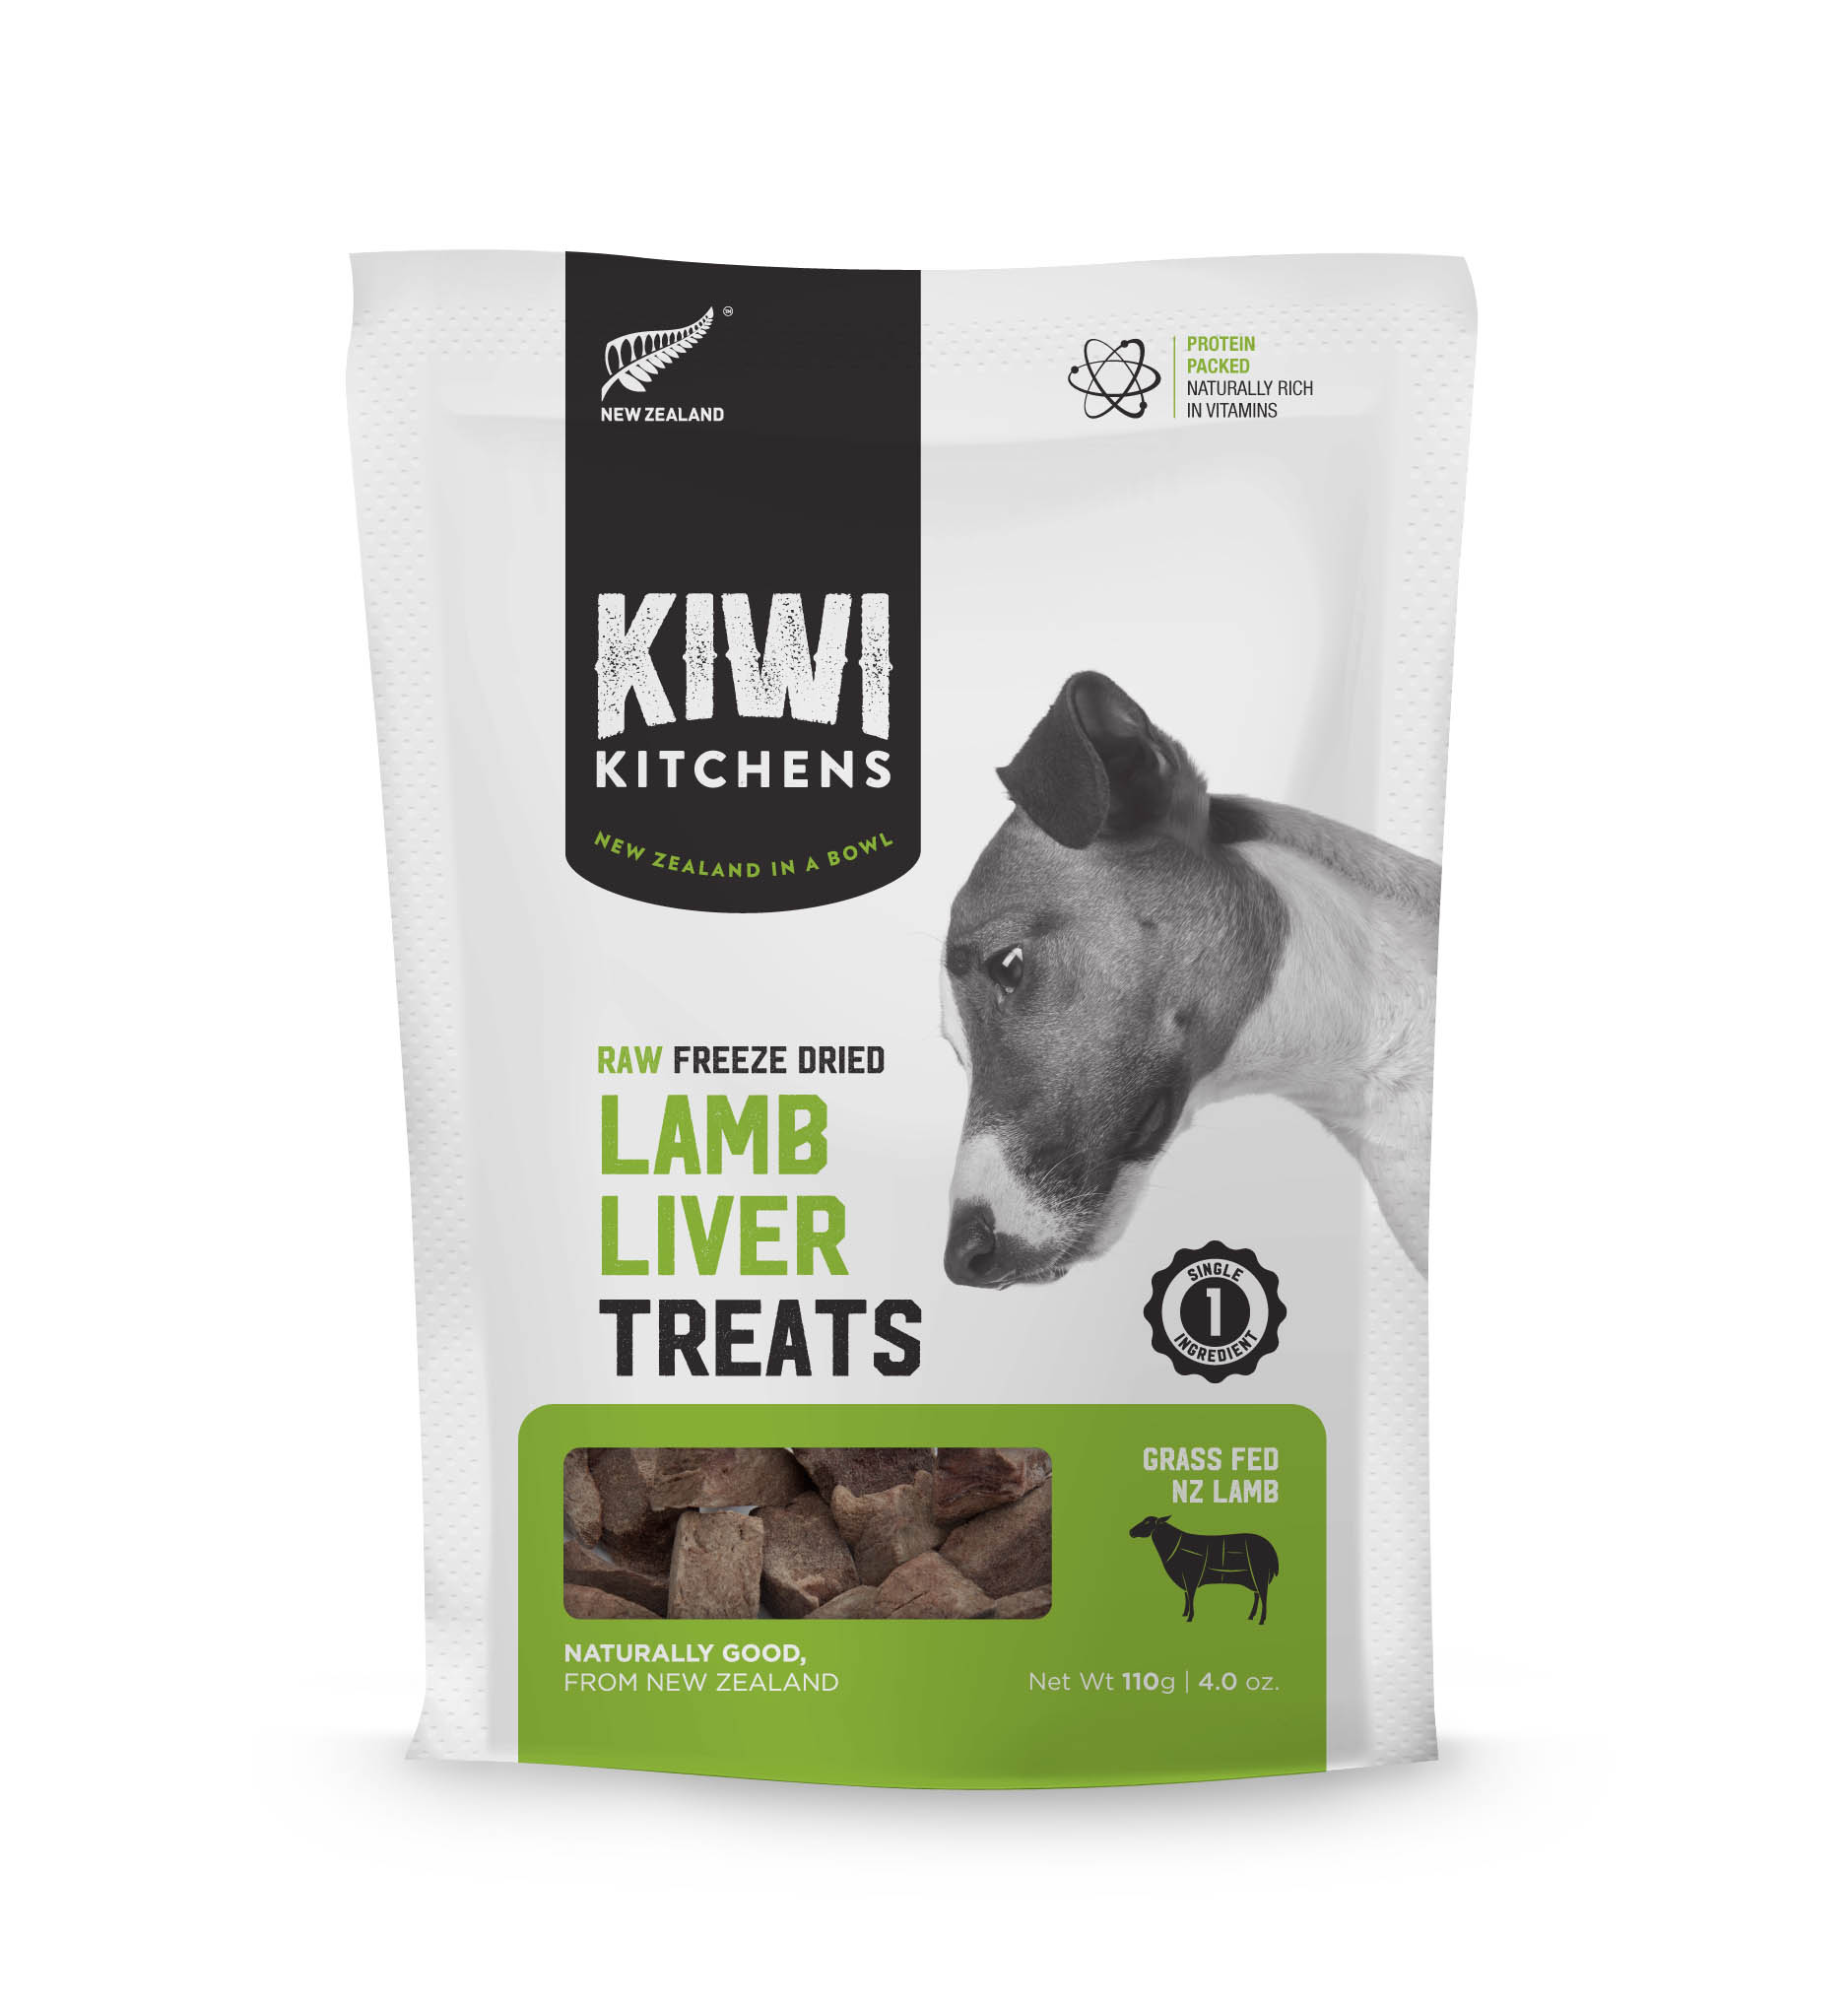 奇異廚房 純羊肝
Kiwi Kitchens Treat - Lamb Liver